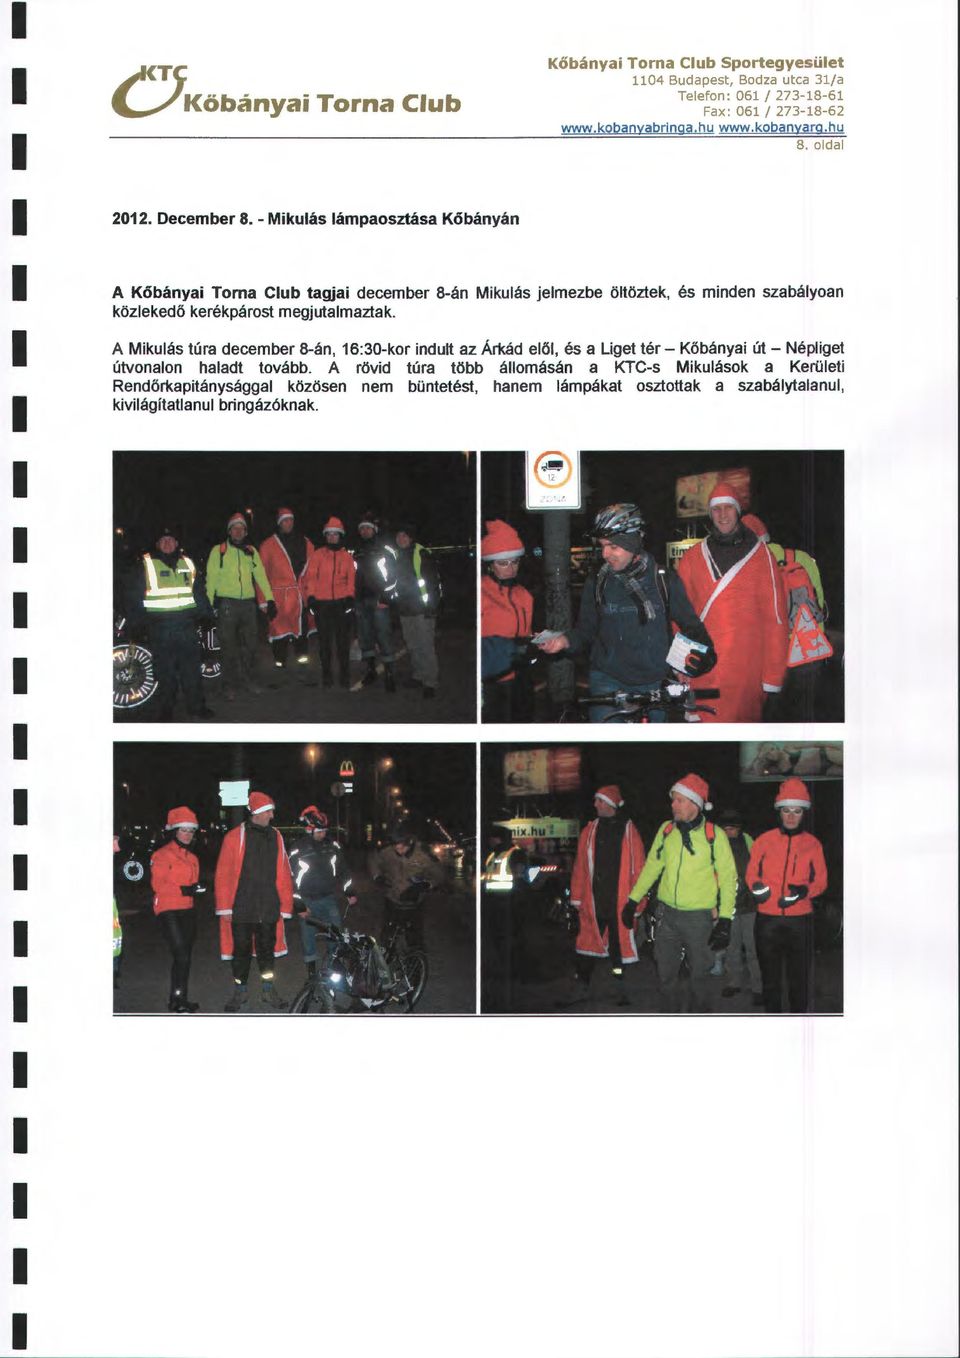 oda A Kőbányai Torna Cub tagjai december 8-án Mikuás jemezbe ötöztek, és minden szabáyoan közekedő kerékpárost megjutamaztak.